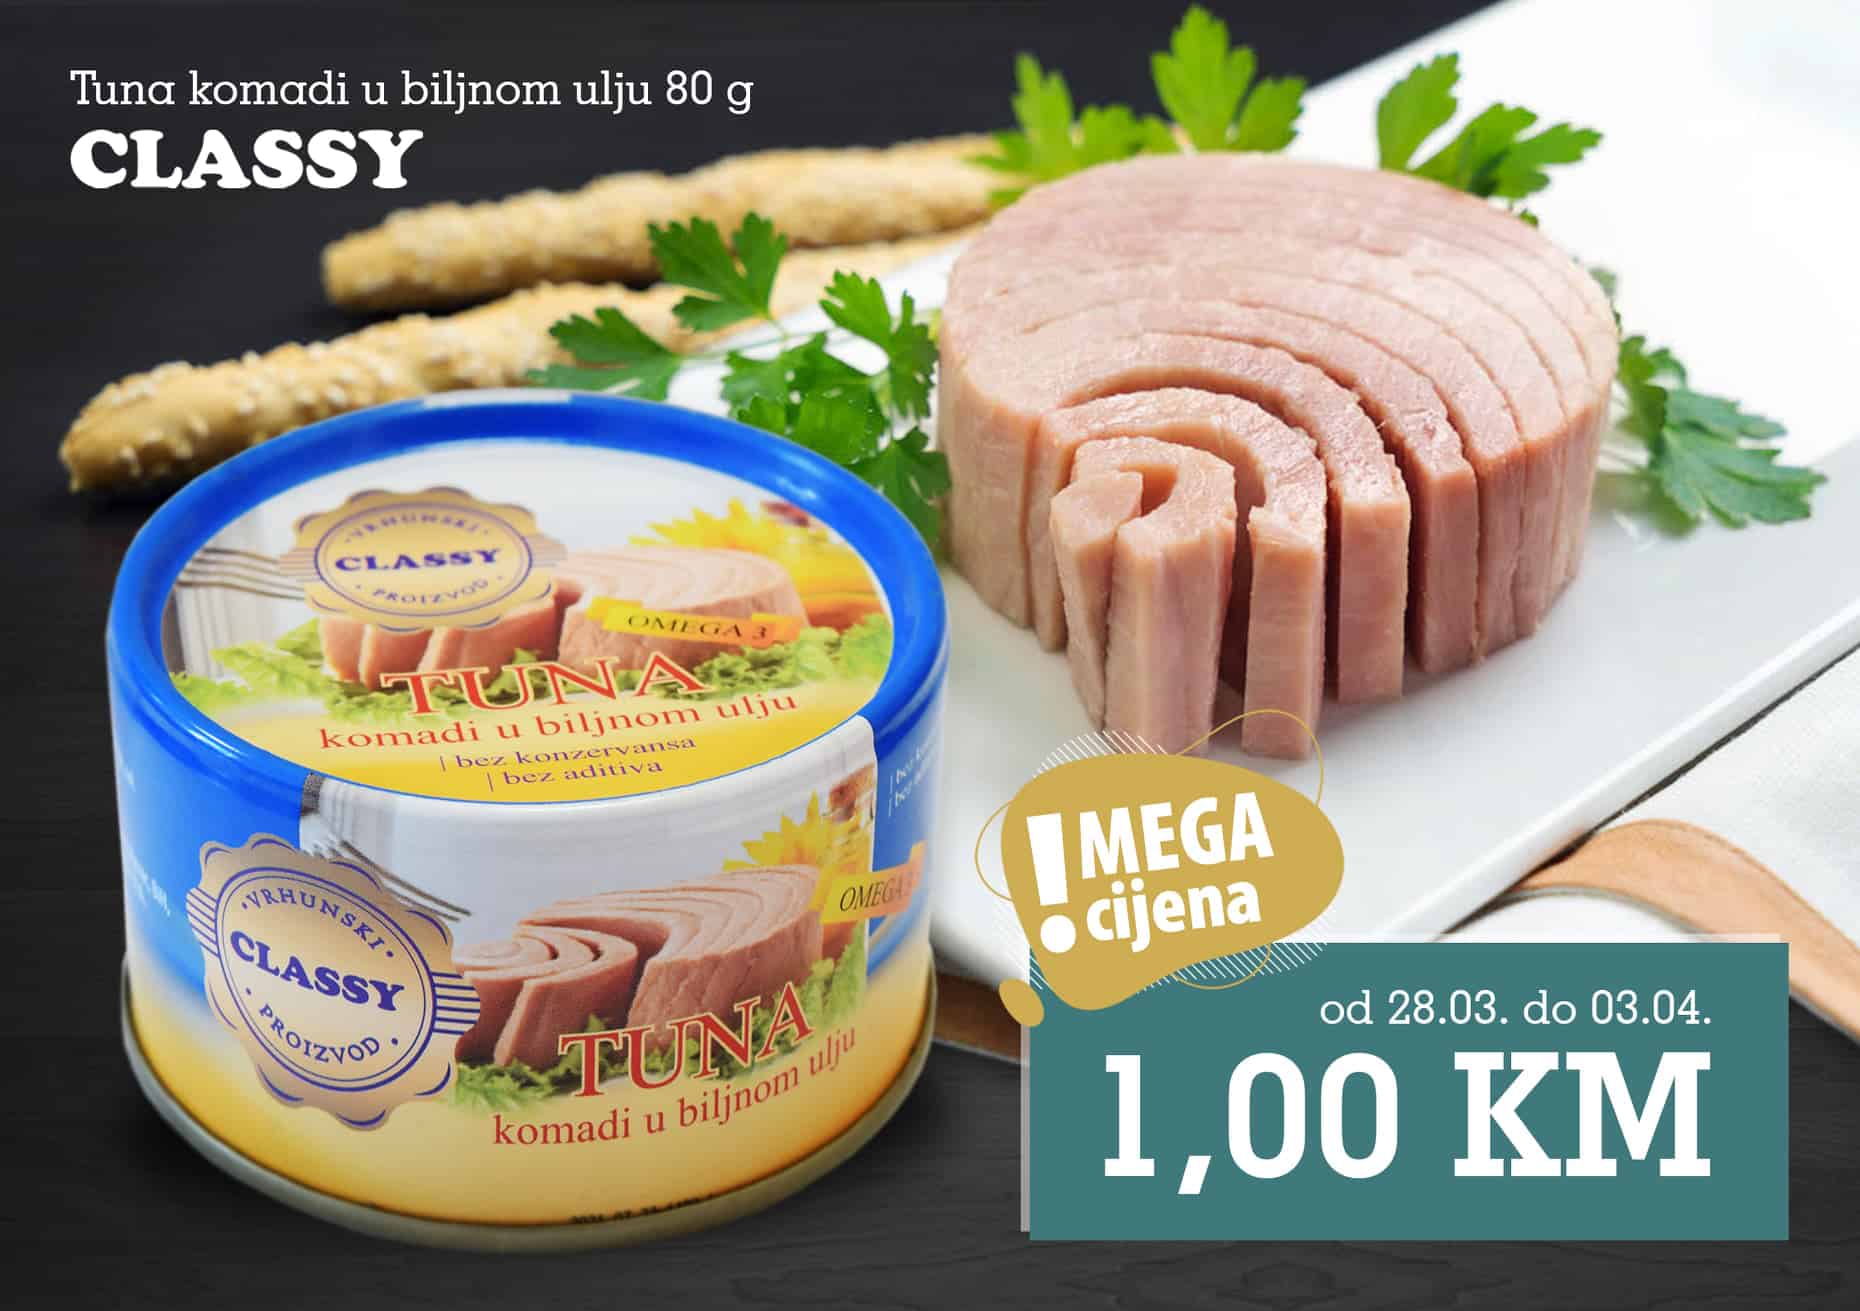 Tuna je odličan izvor proteina i omega 3 masnih kiselina ️ð Može se pripremati na razne načine, a mnogi je najčešće jedu kao dio salate i tjestenine s tunjevinom ili pak pripremaju sočne odreske od tune.